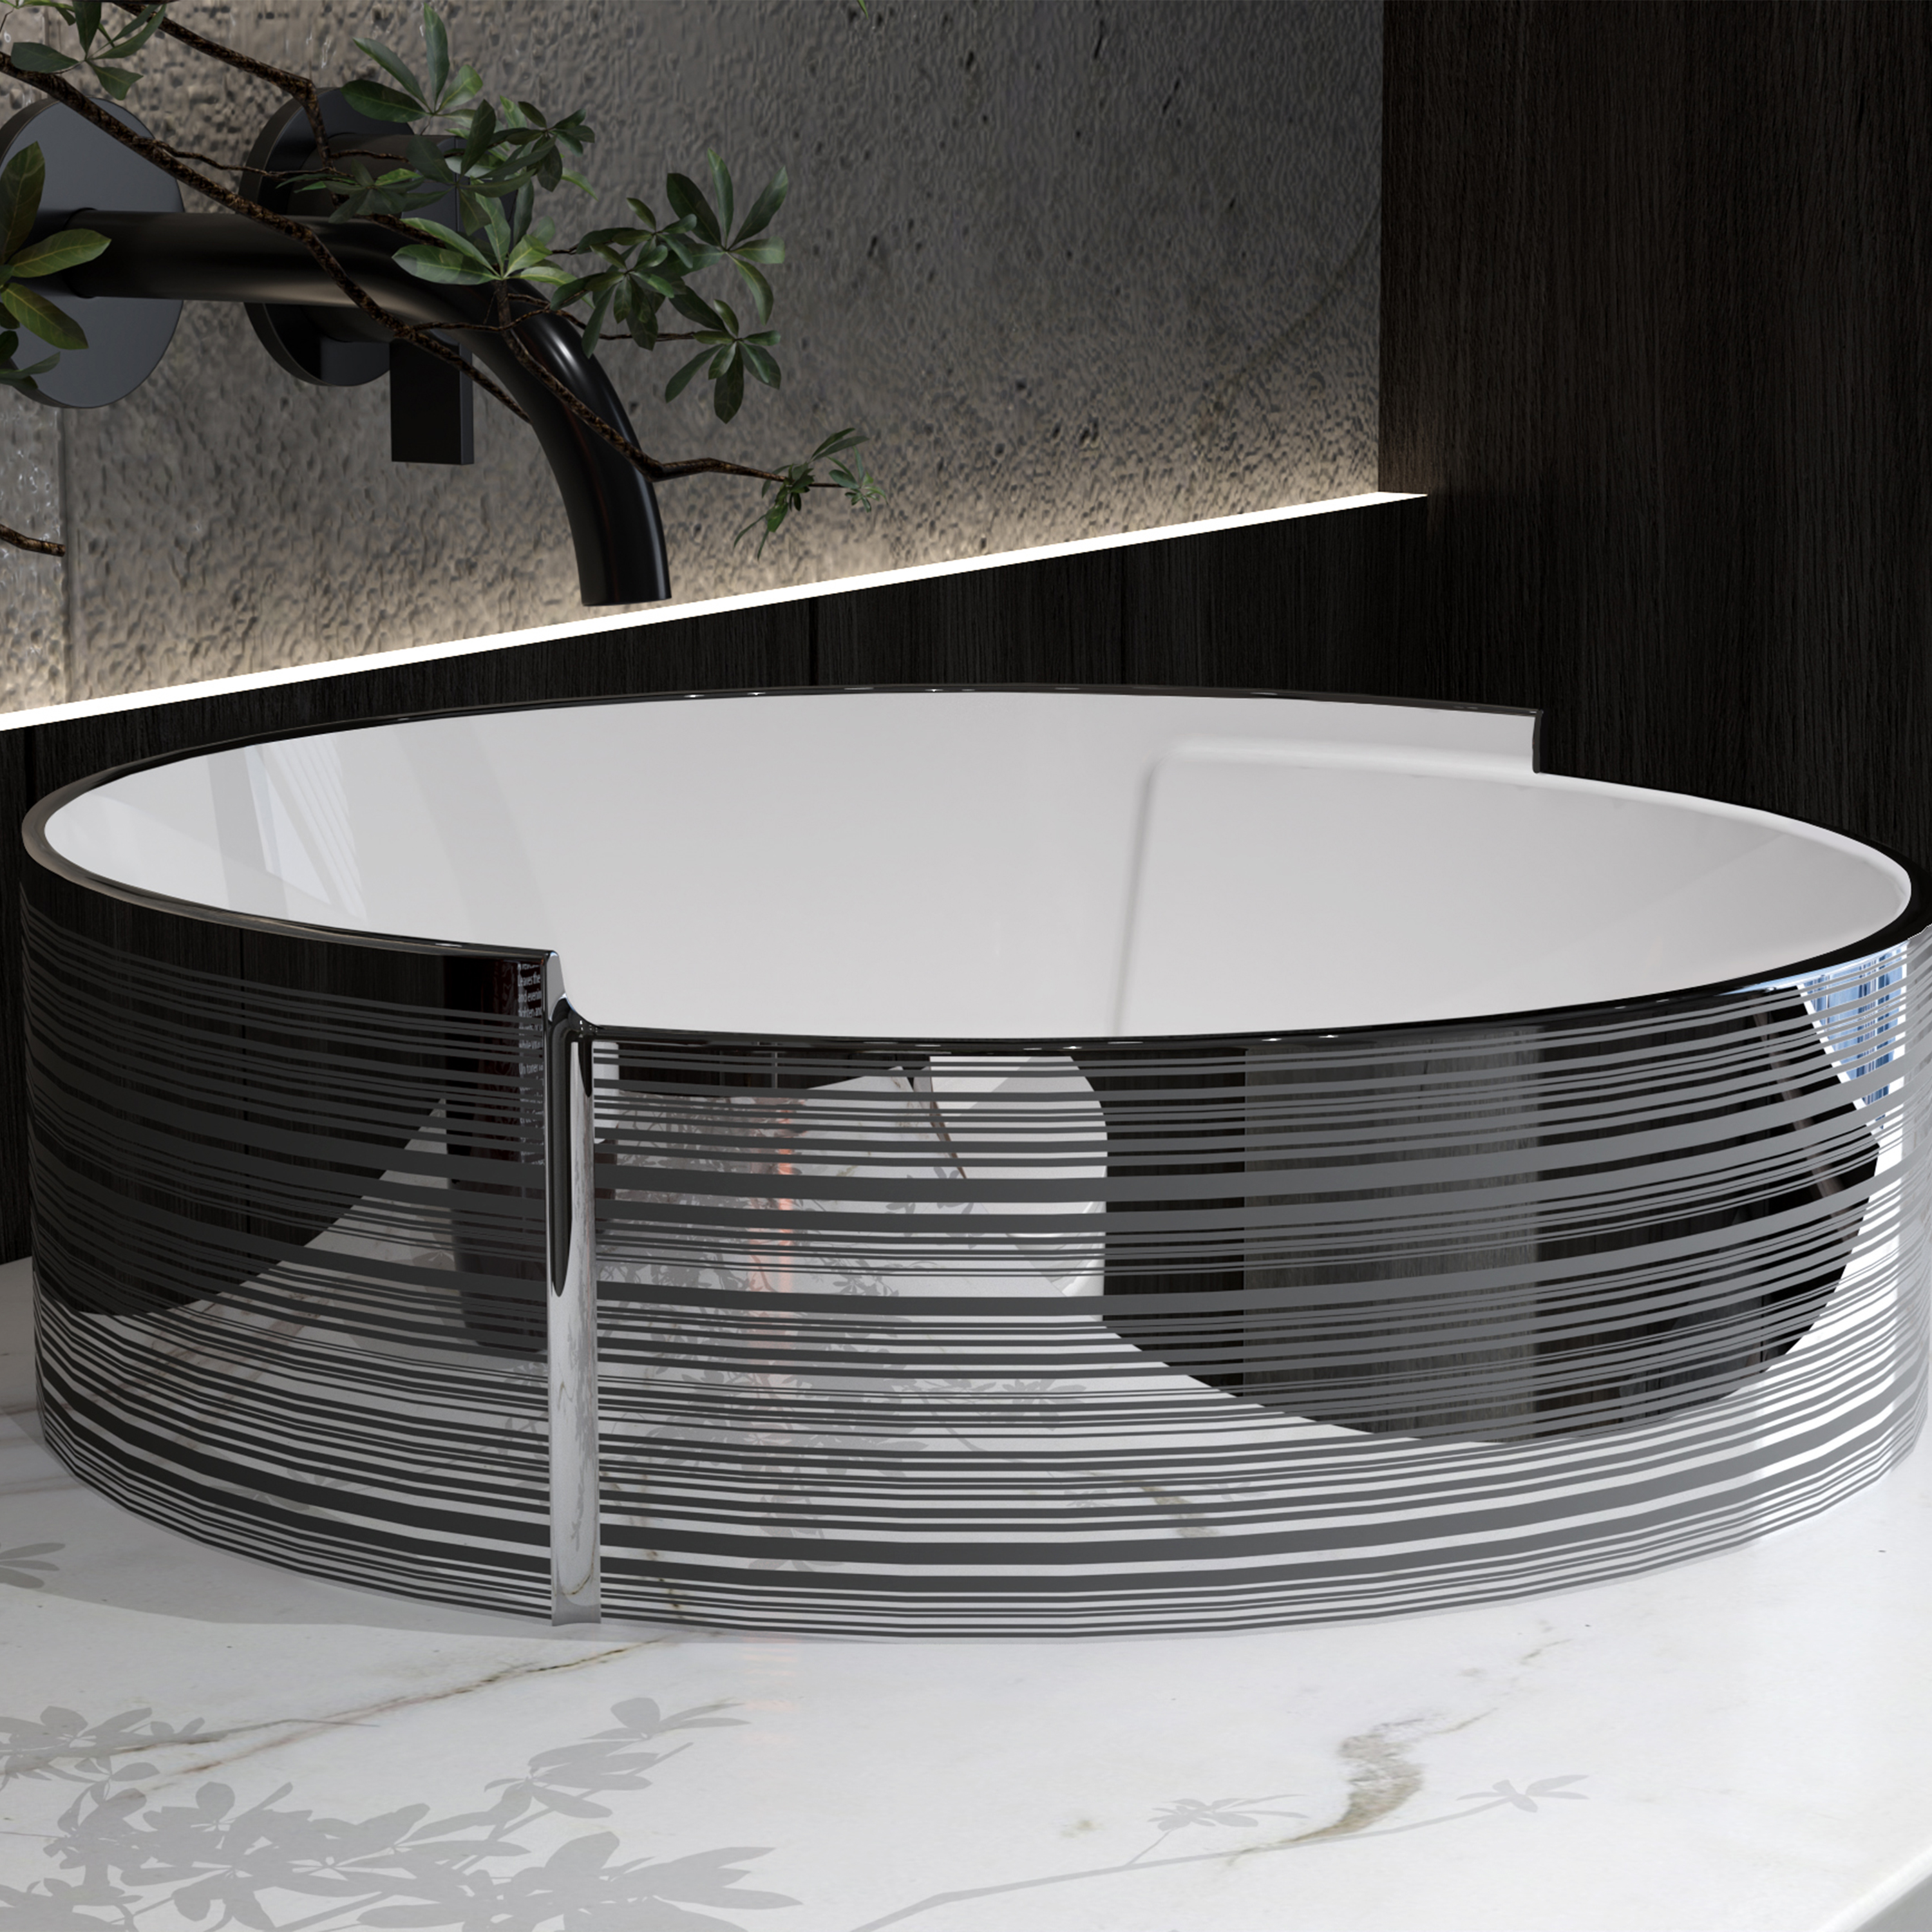 MEJE 16.7×16.5 Inch Silver Stripe Vessel, Above Counter Bathroom Sink, Porcelain Ceramic Vessel Vanity Sink, Art Basin